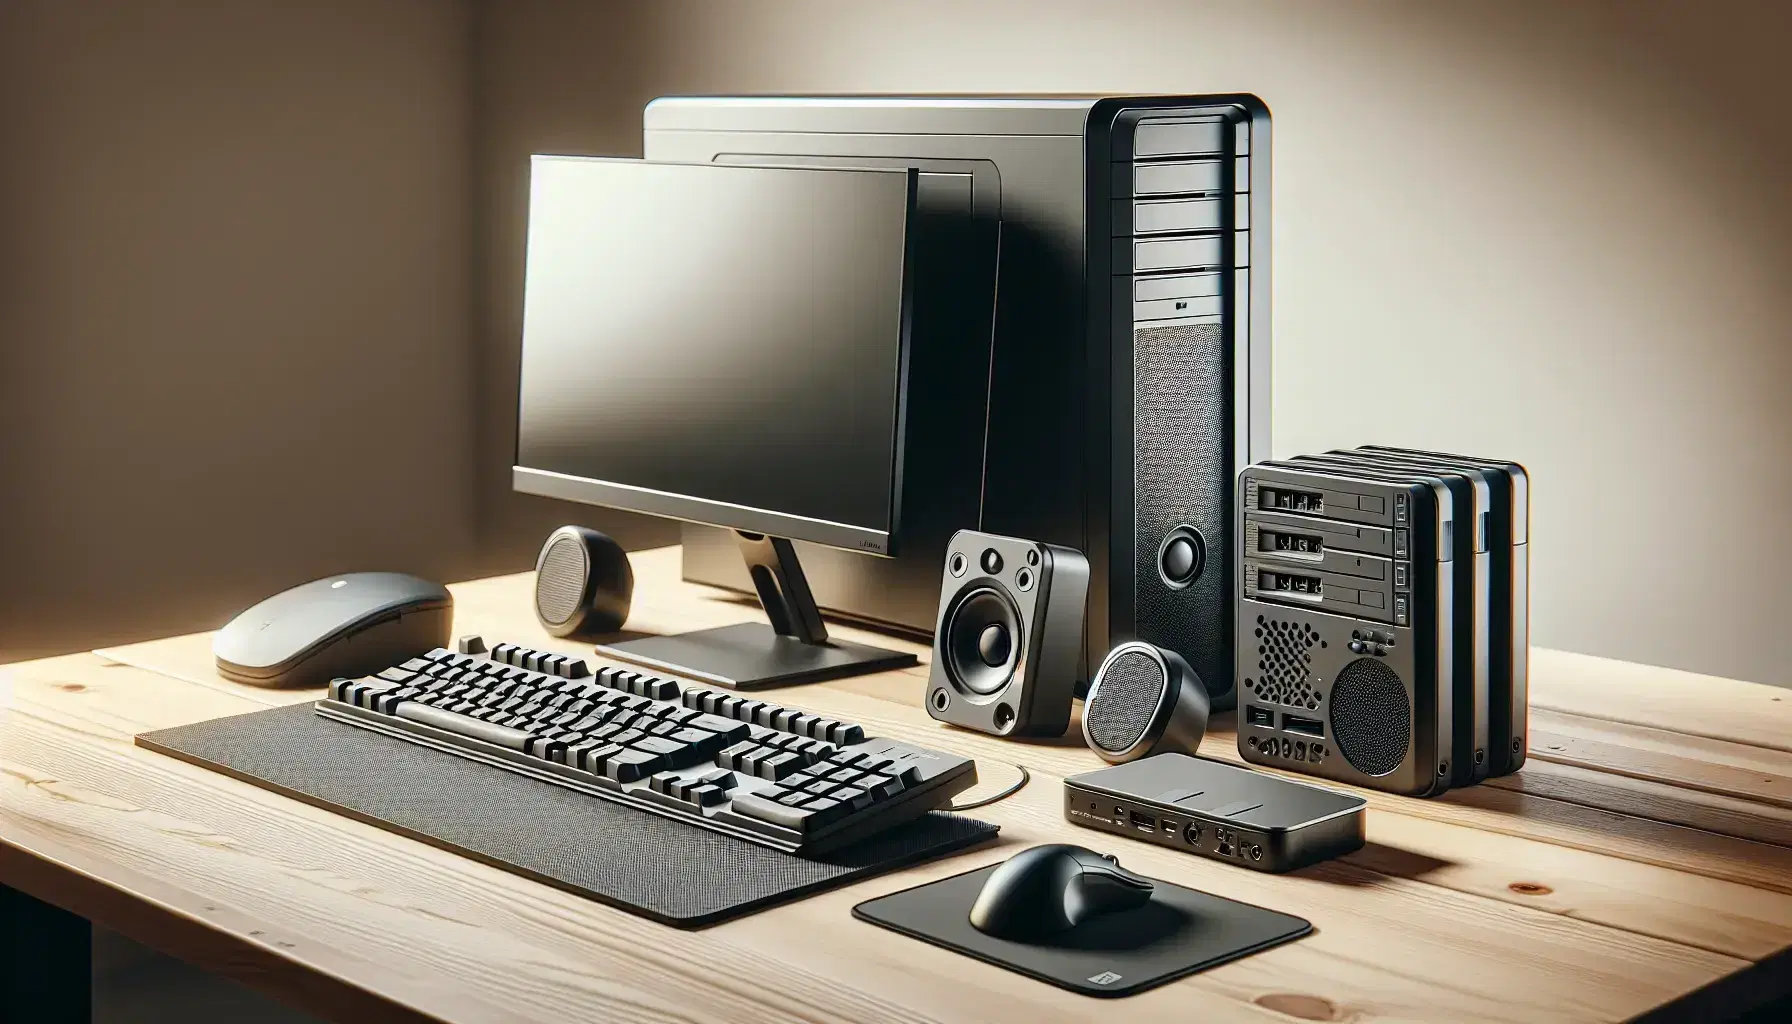 Escritorio con equipo de computación incluyendo torre negra, teclado, ratón óptico, monitor, altavoz y disco duro externo junto a impresora multifunción blanca.